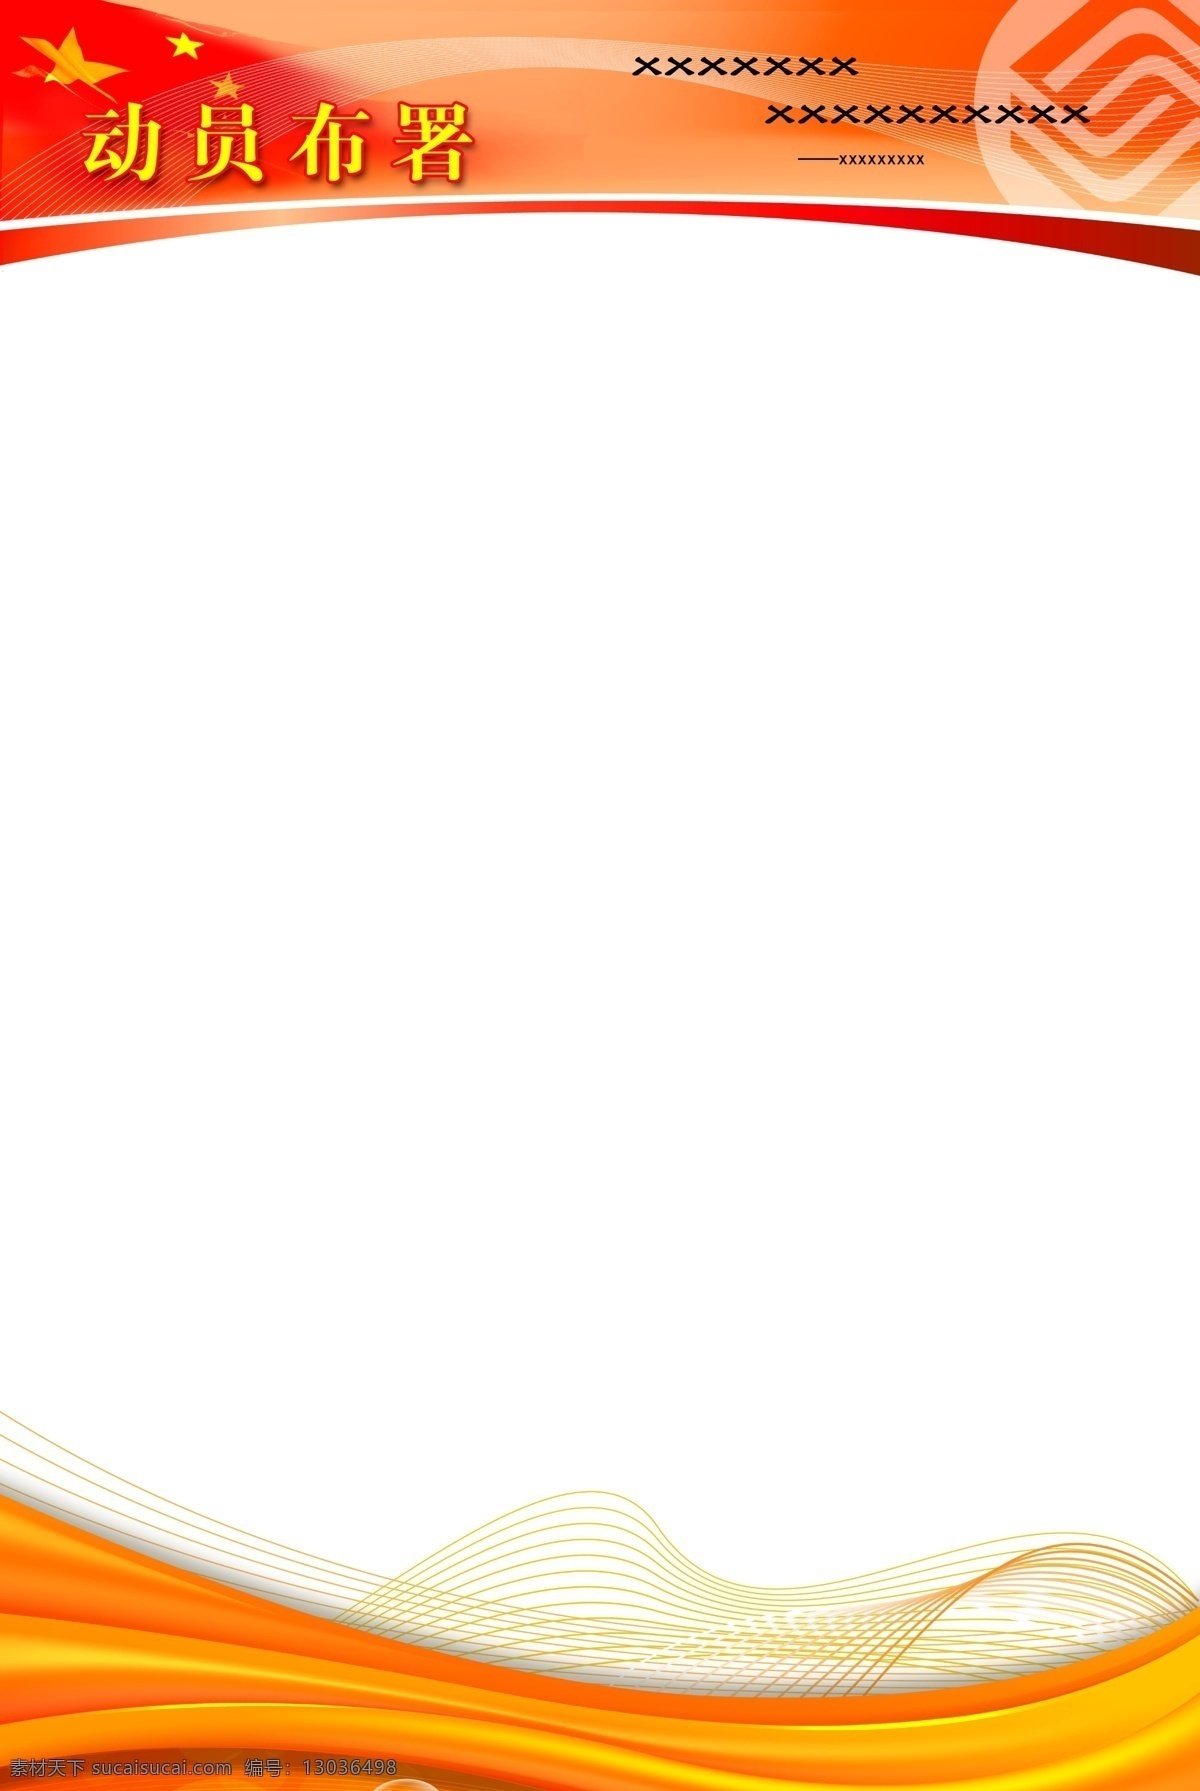 背景 绸子 底纹 广告设计模板 国旗 国庆 红旗 红色 动员部署展板 展架 旗帜 星星 飘带 移动 前言 黄色 展板 线条 展板模板 源文件 其他展板设计